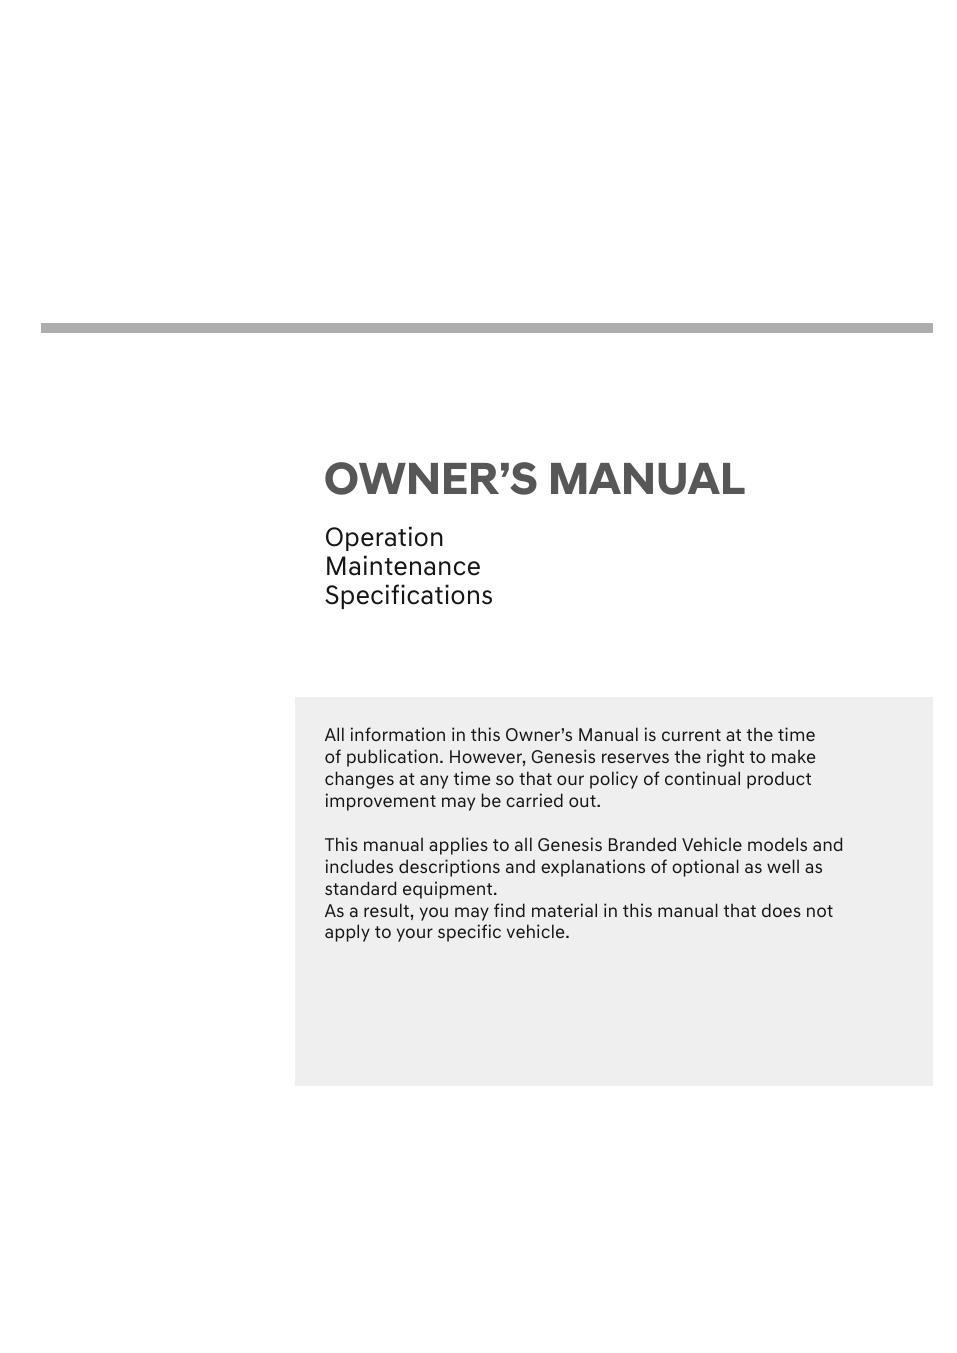 genesis-branded-vehicle-owners-manual.pdf